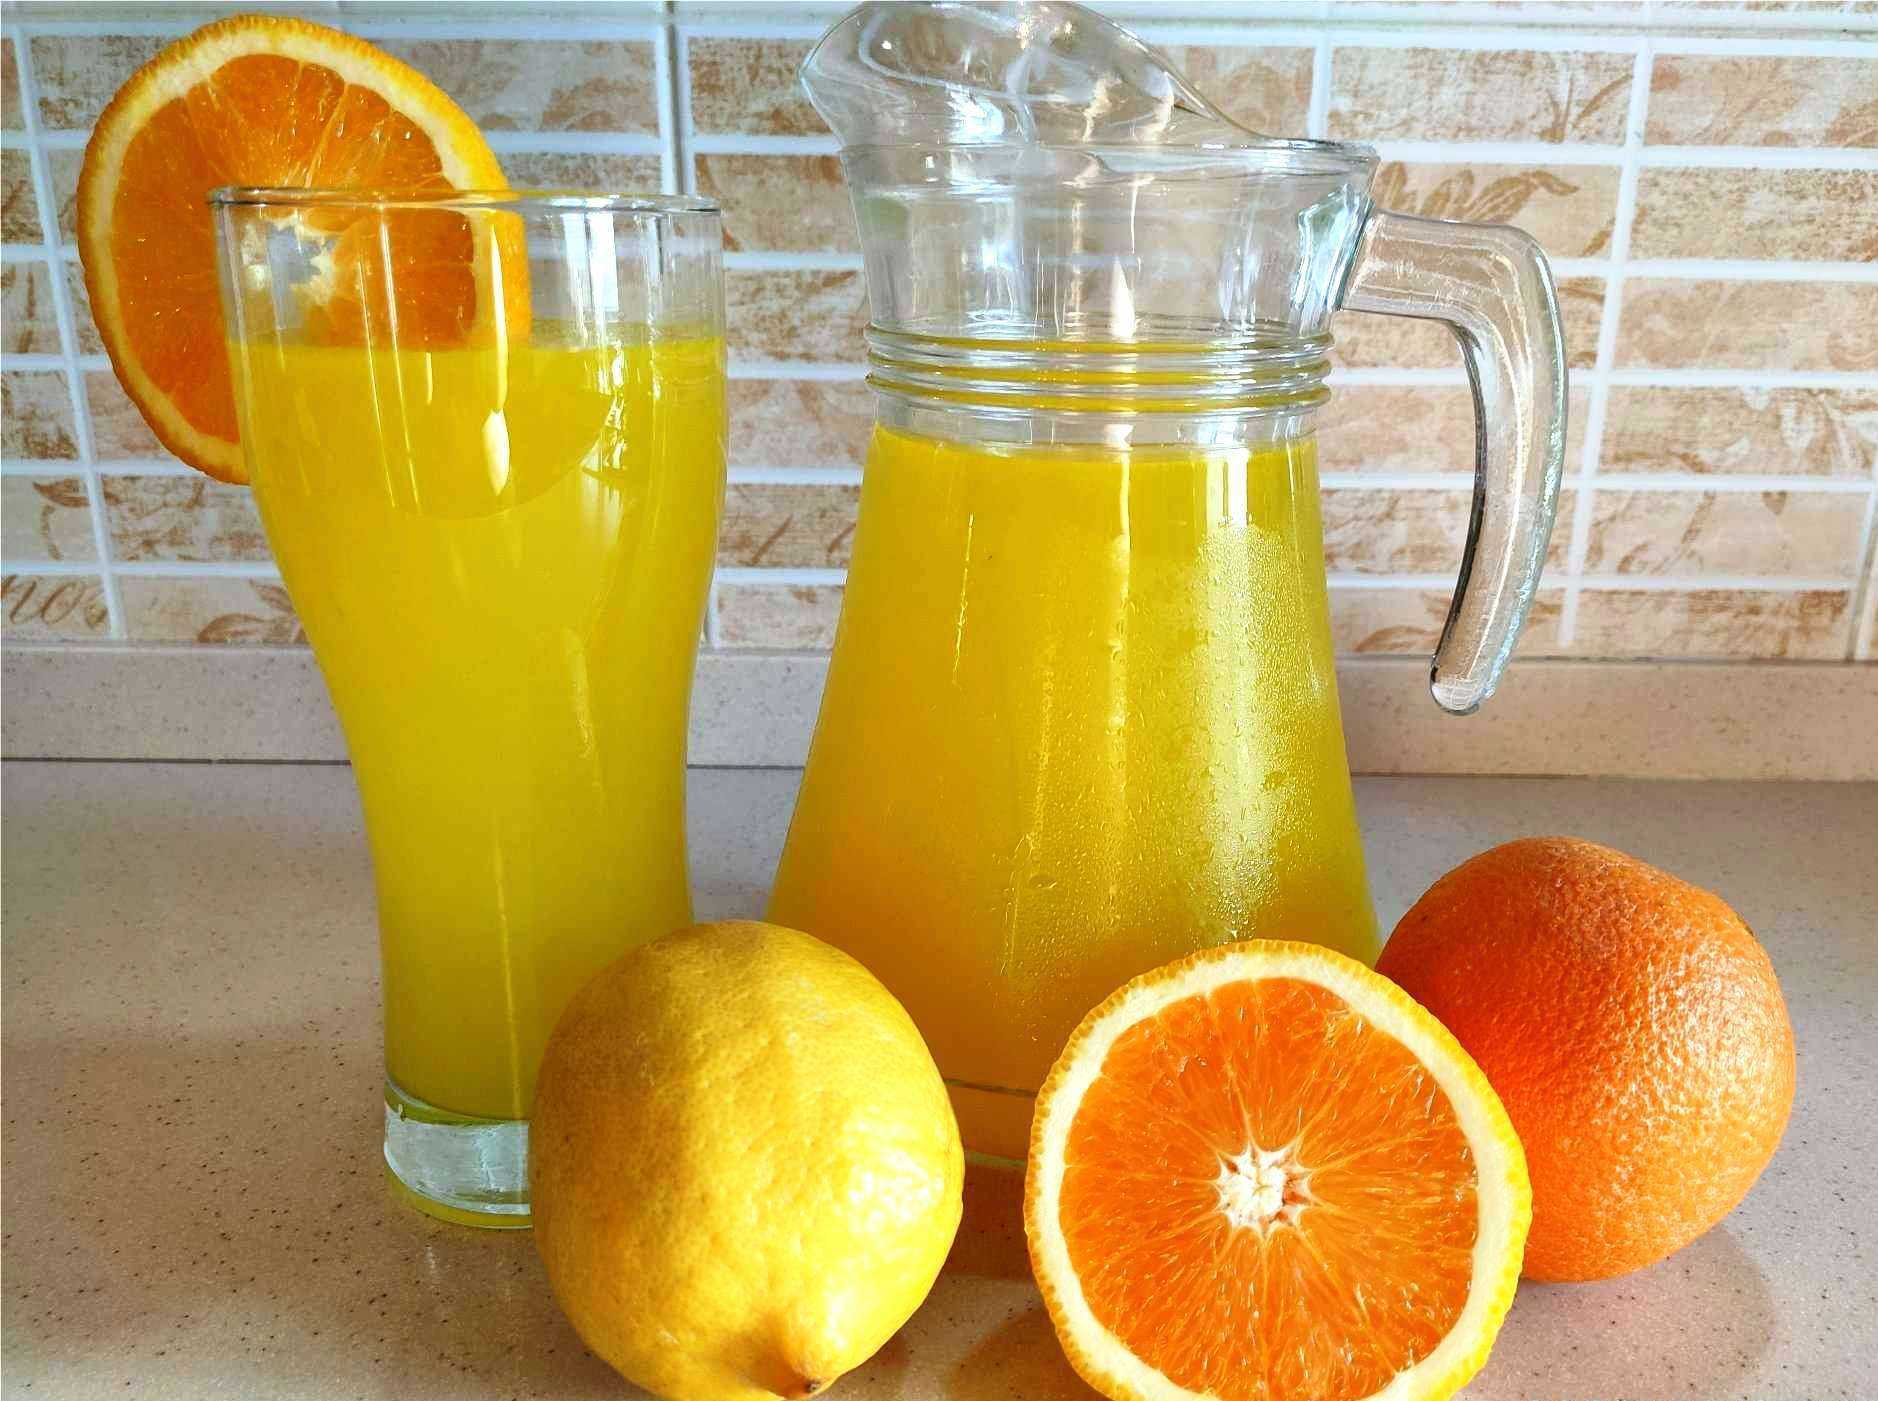 Мы собрали лучшие рецепты освежающего домашнего лимонада на любой вкус - классический, имбирный, апельсиновый, малиновый, с лаймом, огурцом и многие другие